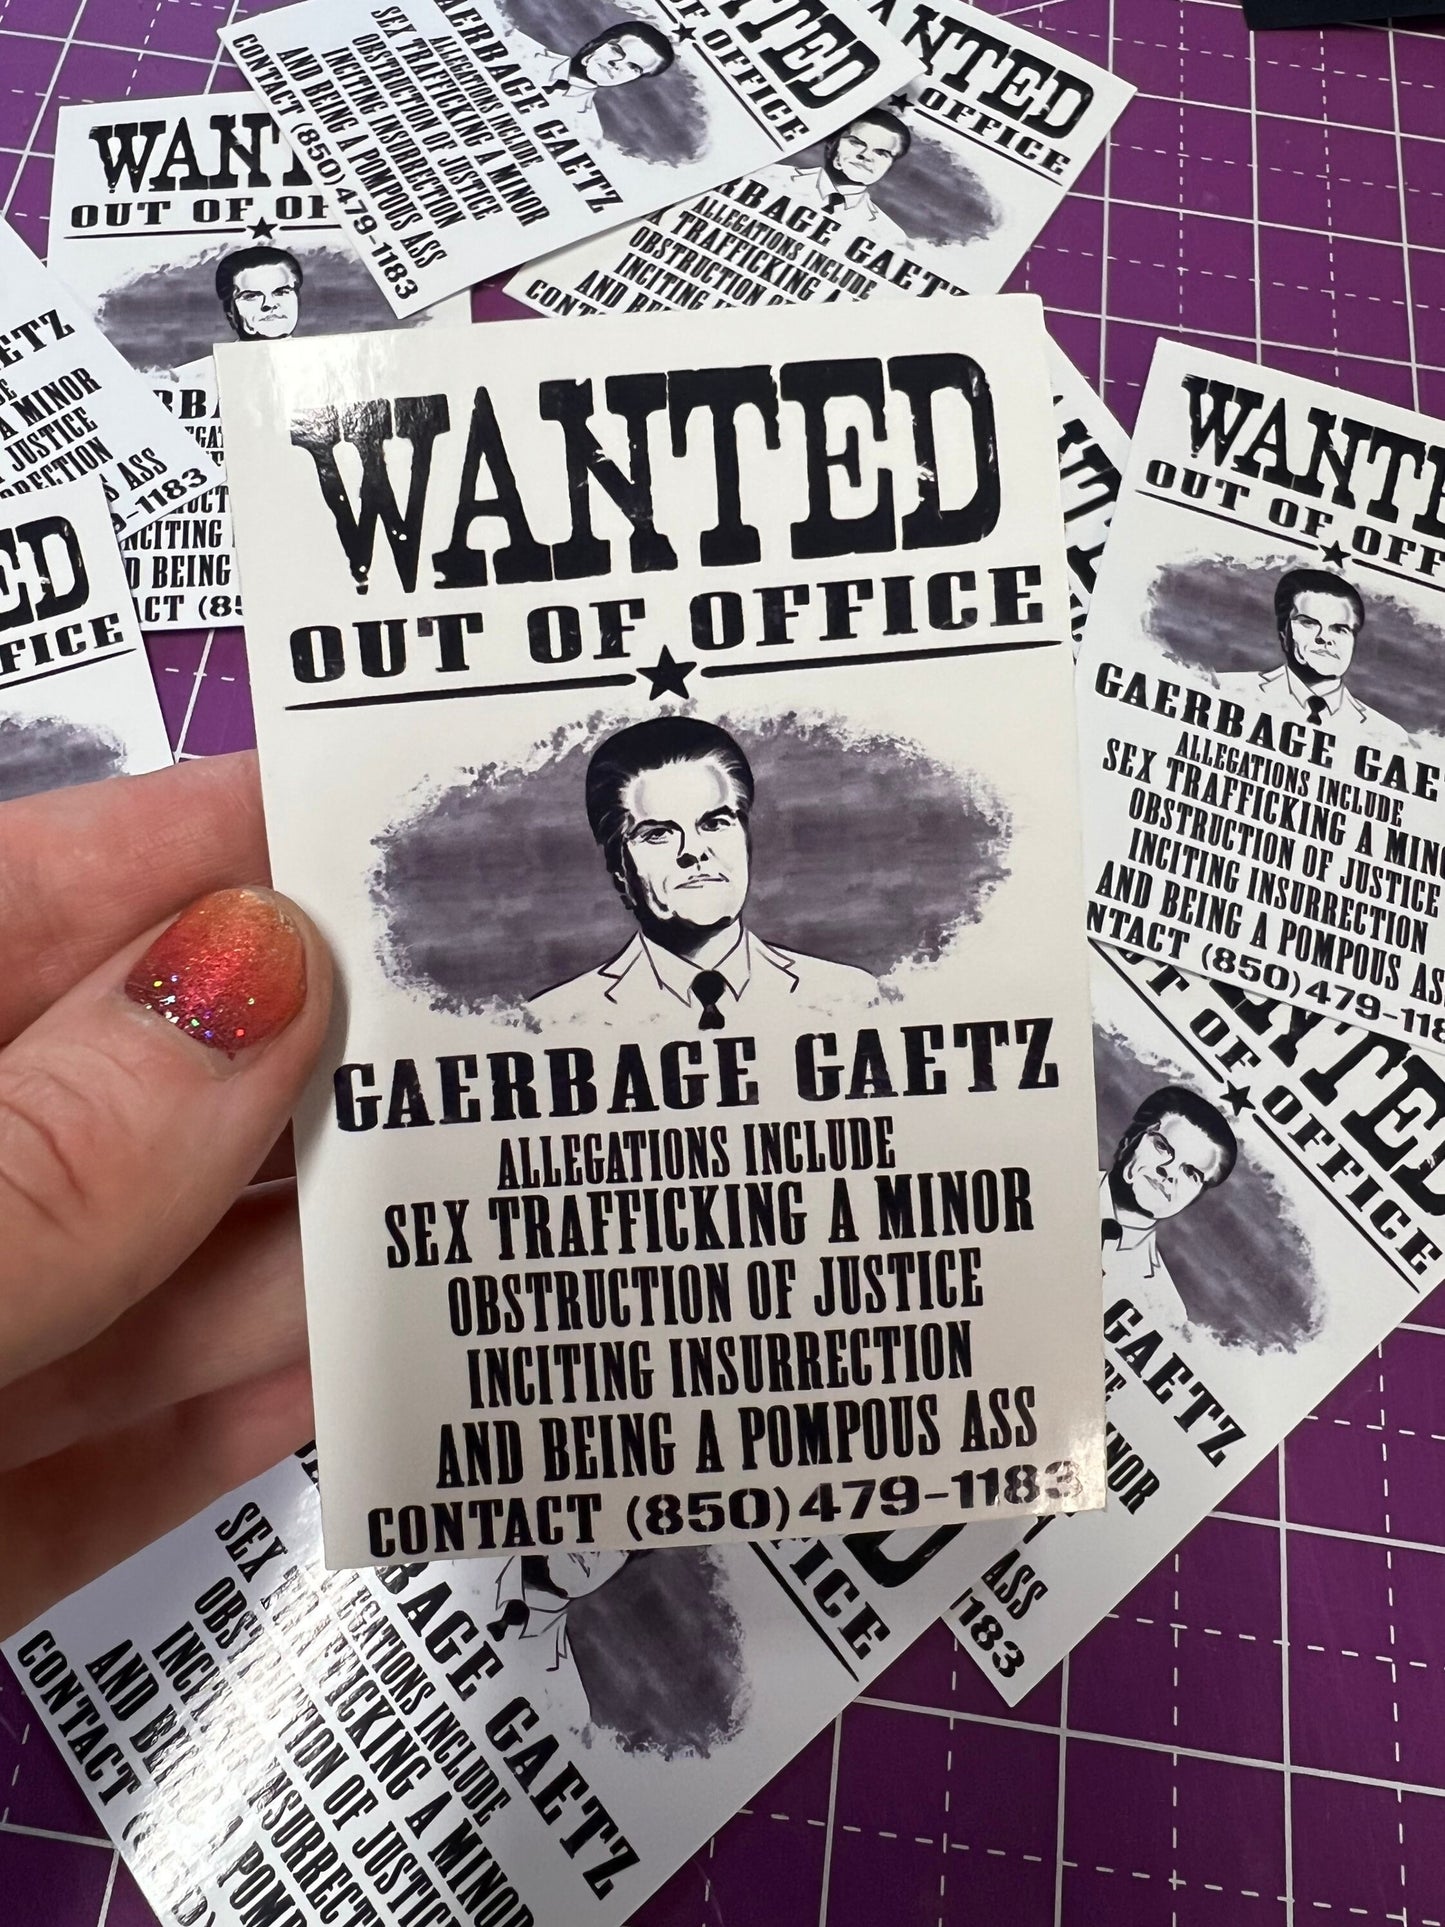 Most Wanted: Out of Office Matt Gaetz Gaerbage Gaetz Sticker